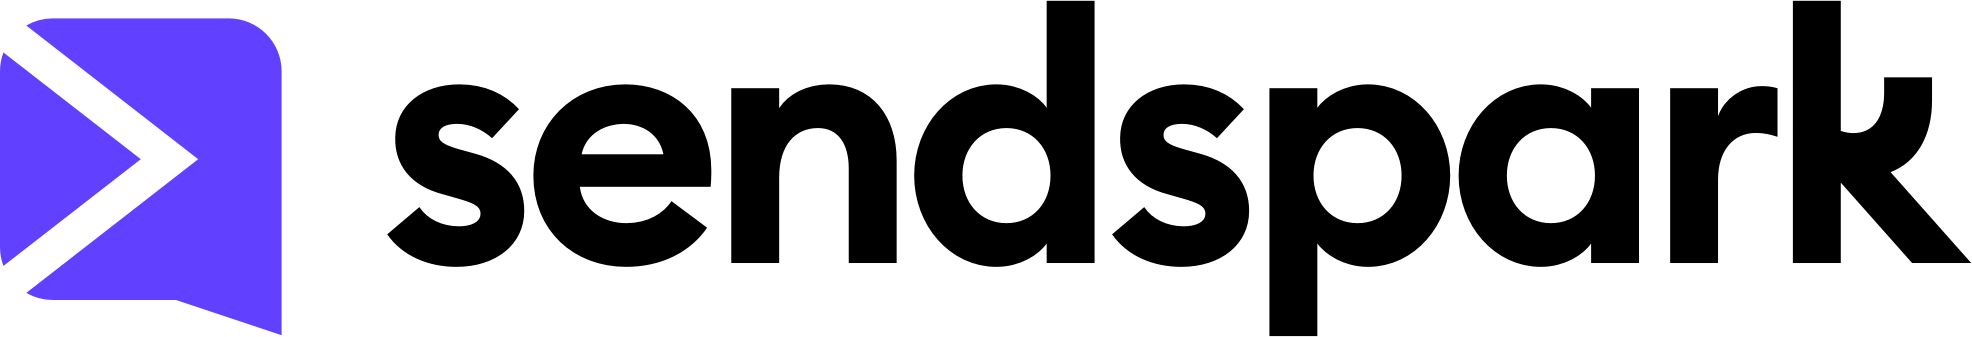 sendspark-logo